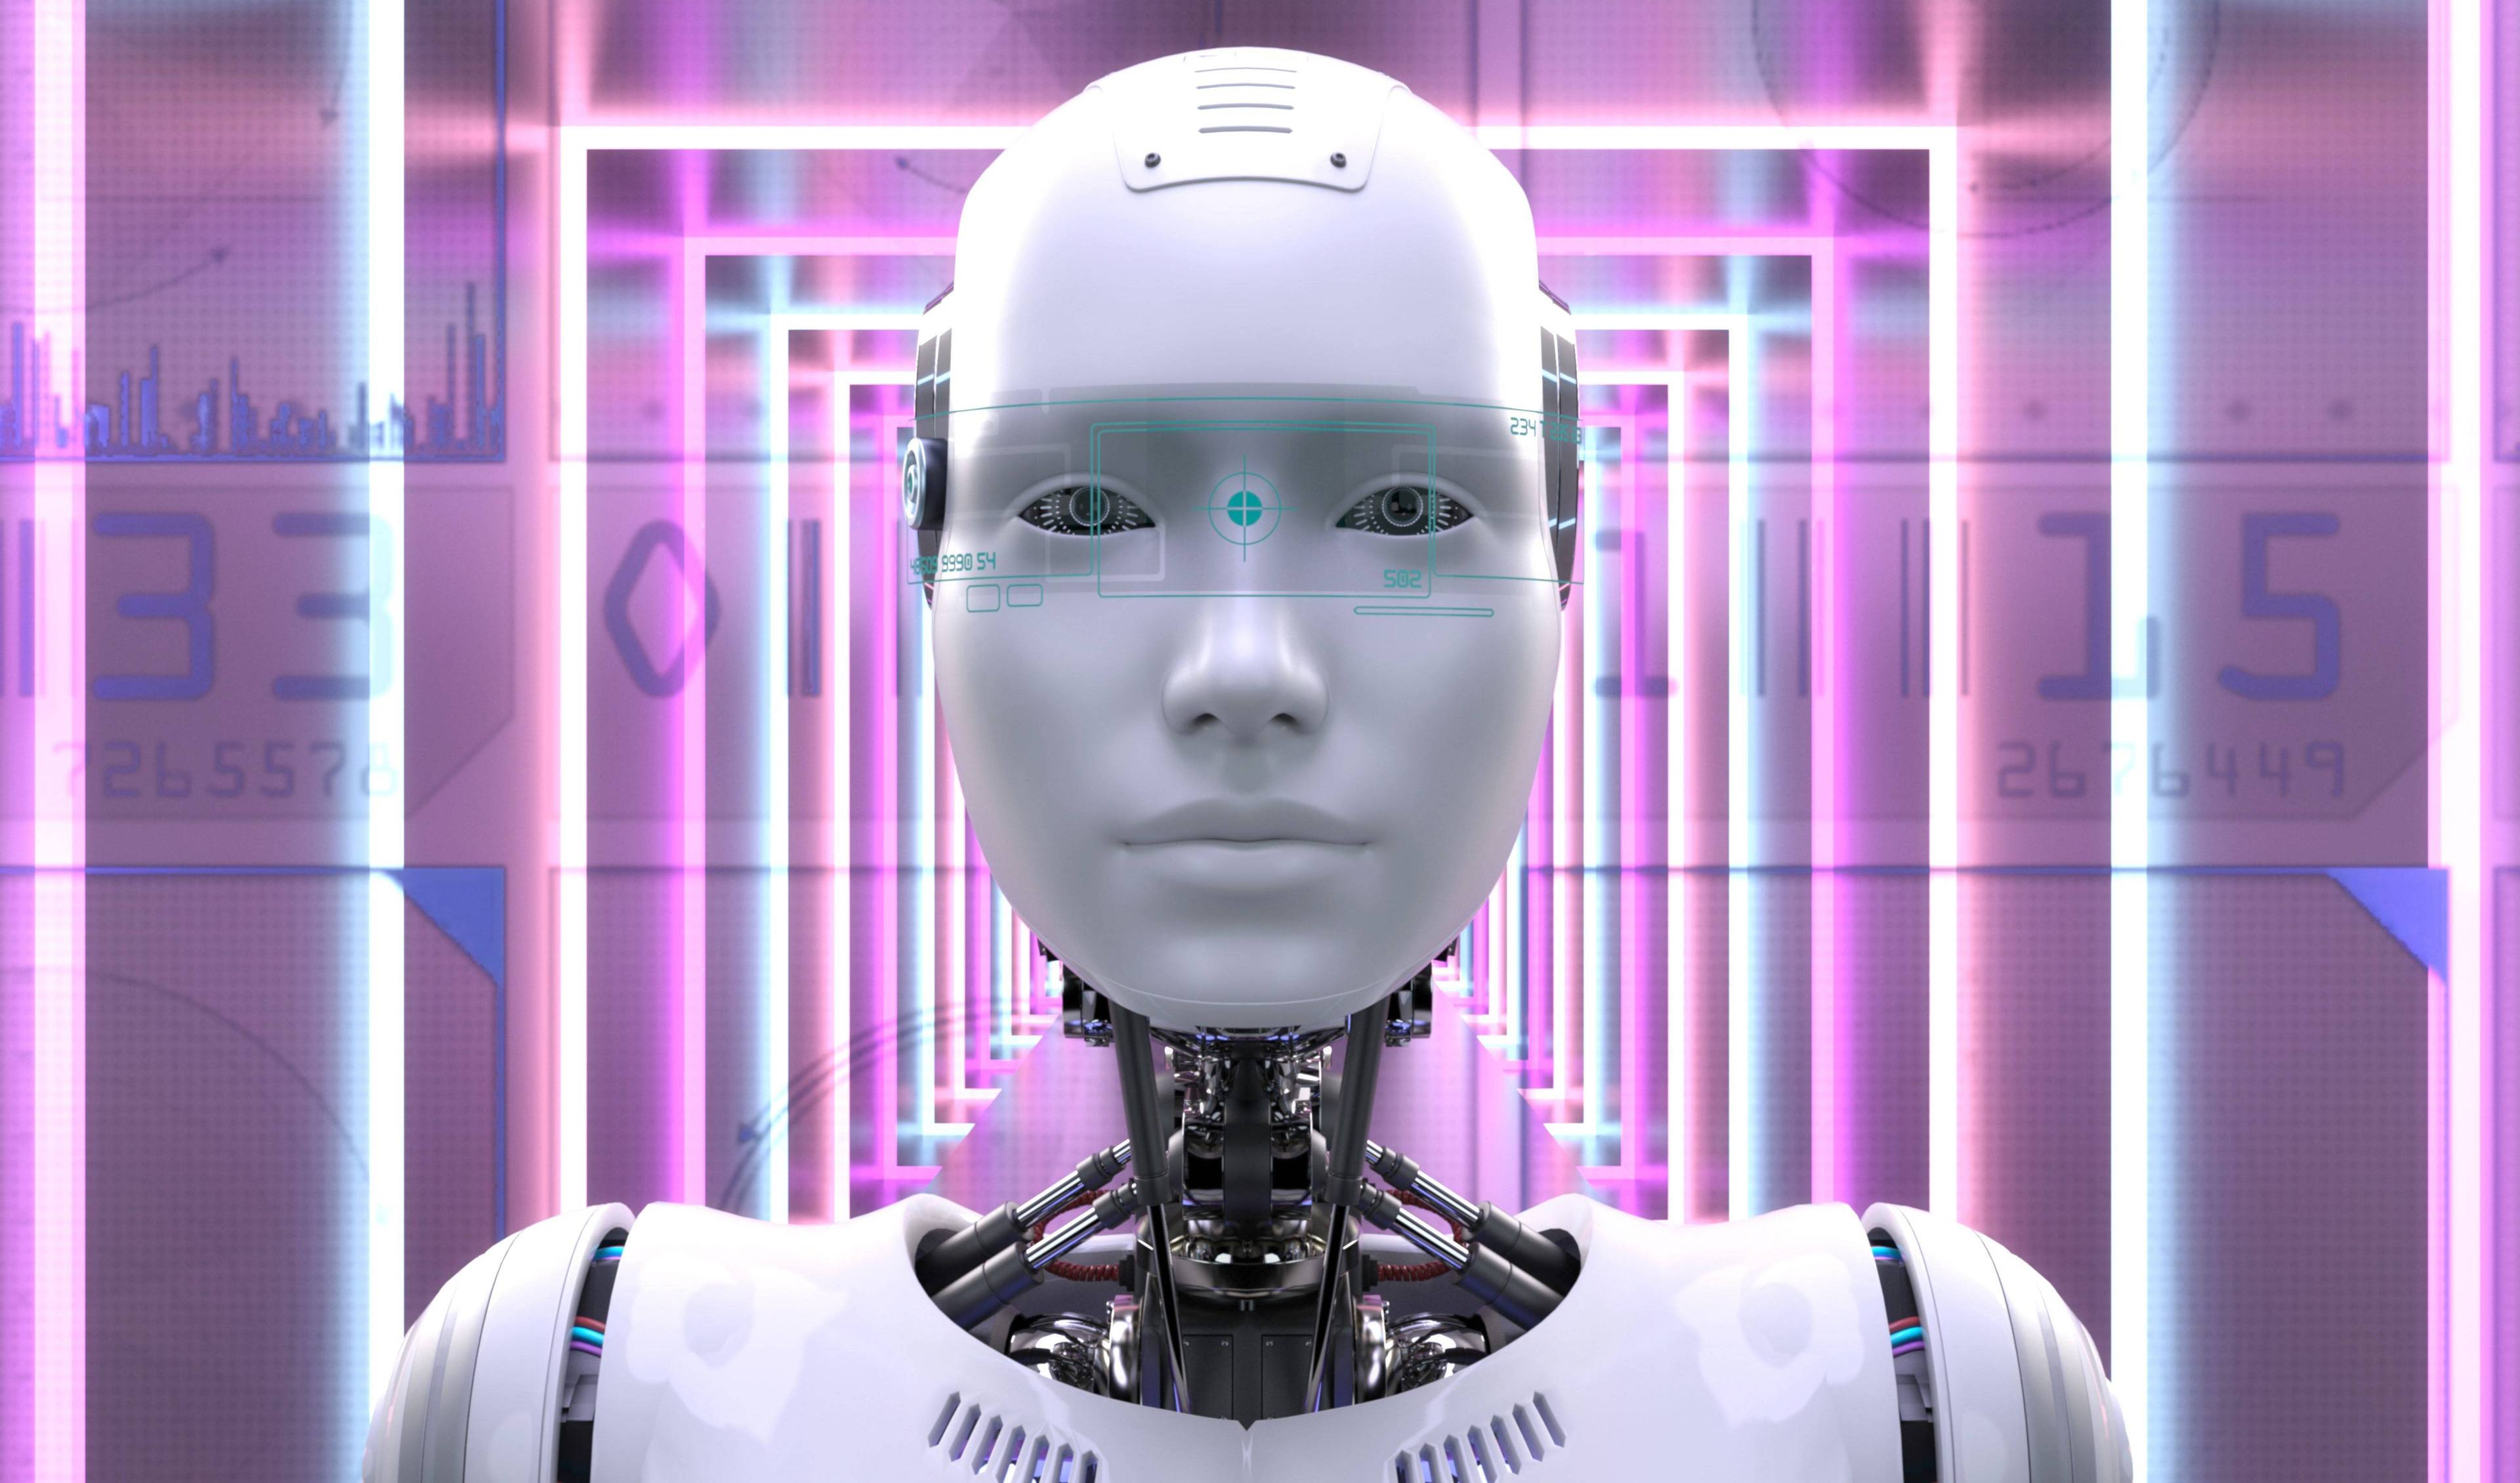 Frontalansicht eines humanoiden Roboters